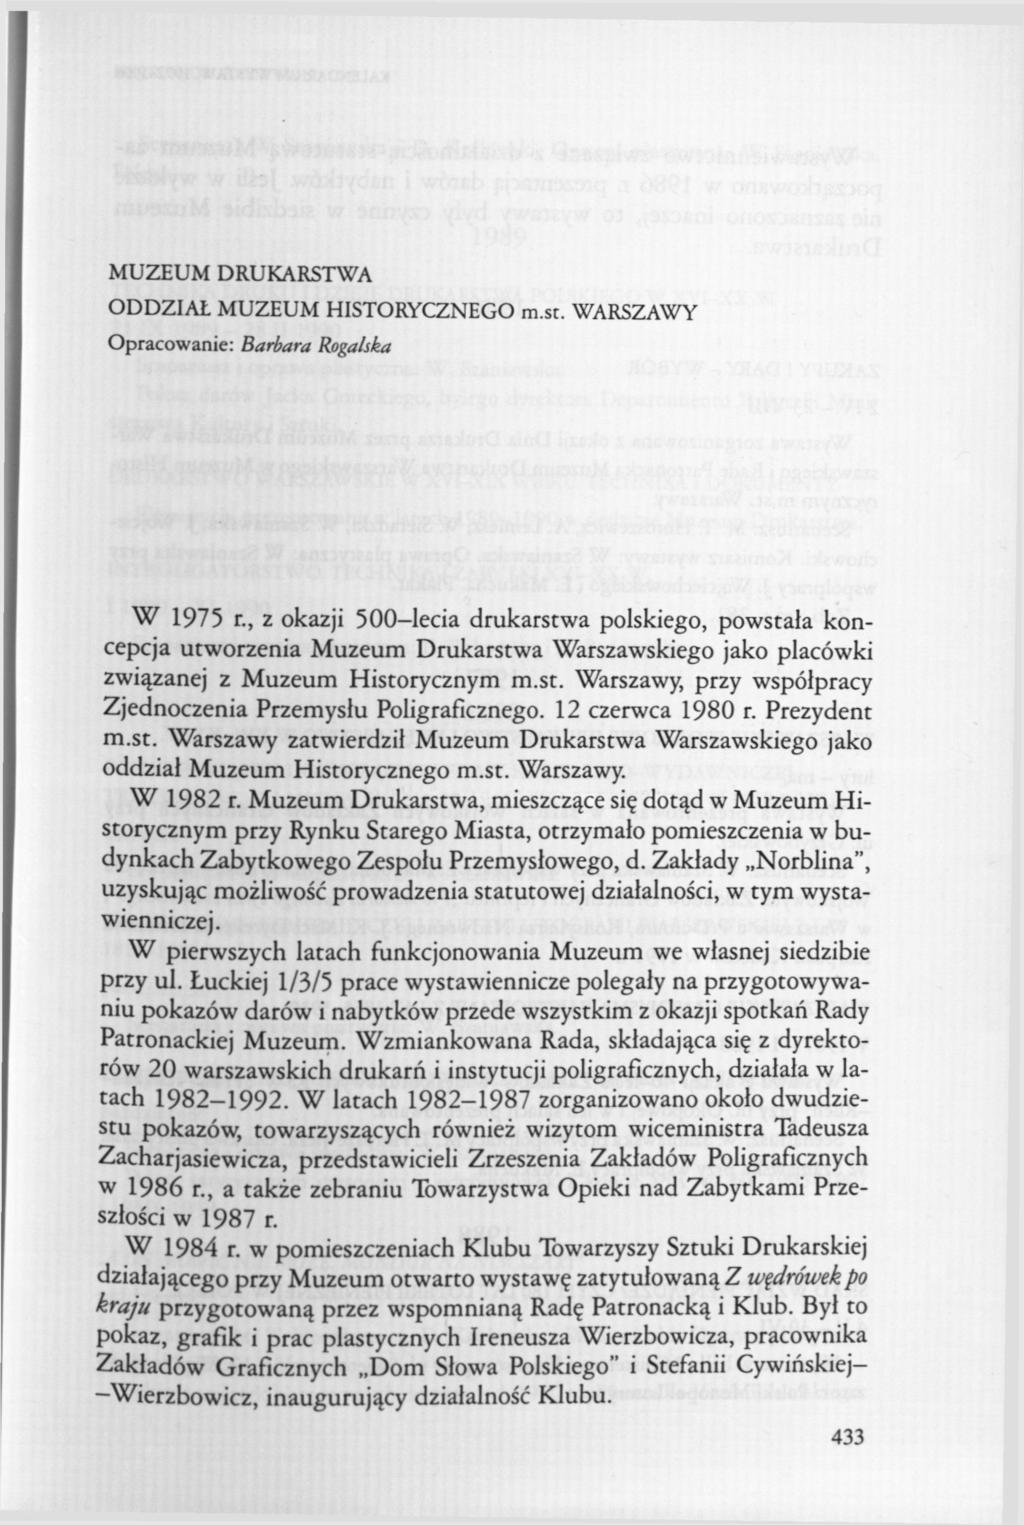 MUZEUM DRUKARSTWA ODDZIAŁ MUZEUM HISTORYCZNEGO m.st. WARSZAWY Opracowanie: Barbara Rogalska W 1975 r.